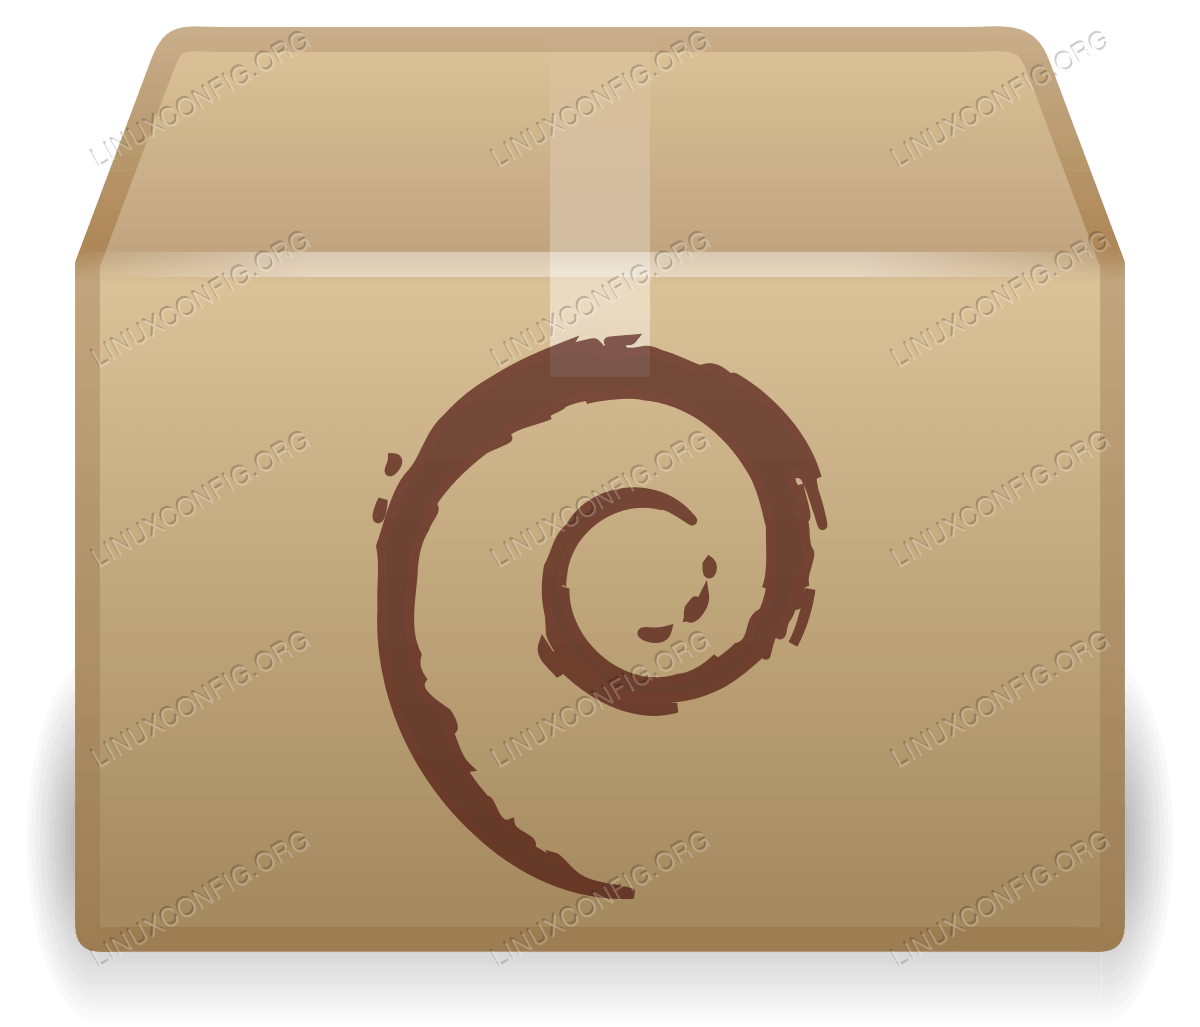 Debian tabanlı işletim sistemlerinde depolarda bulunmayan paketleri yüklemek